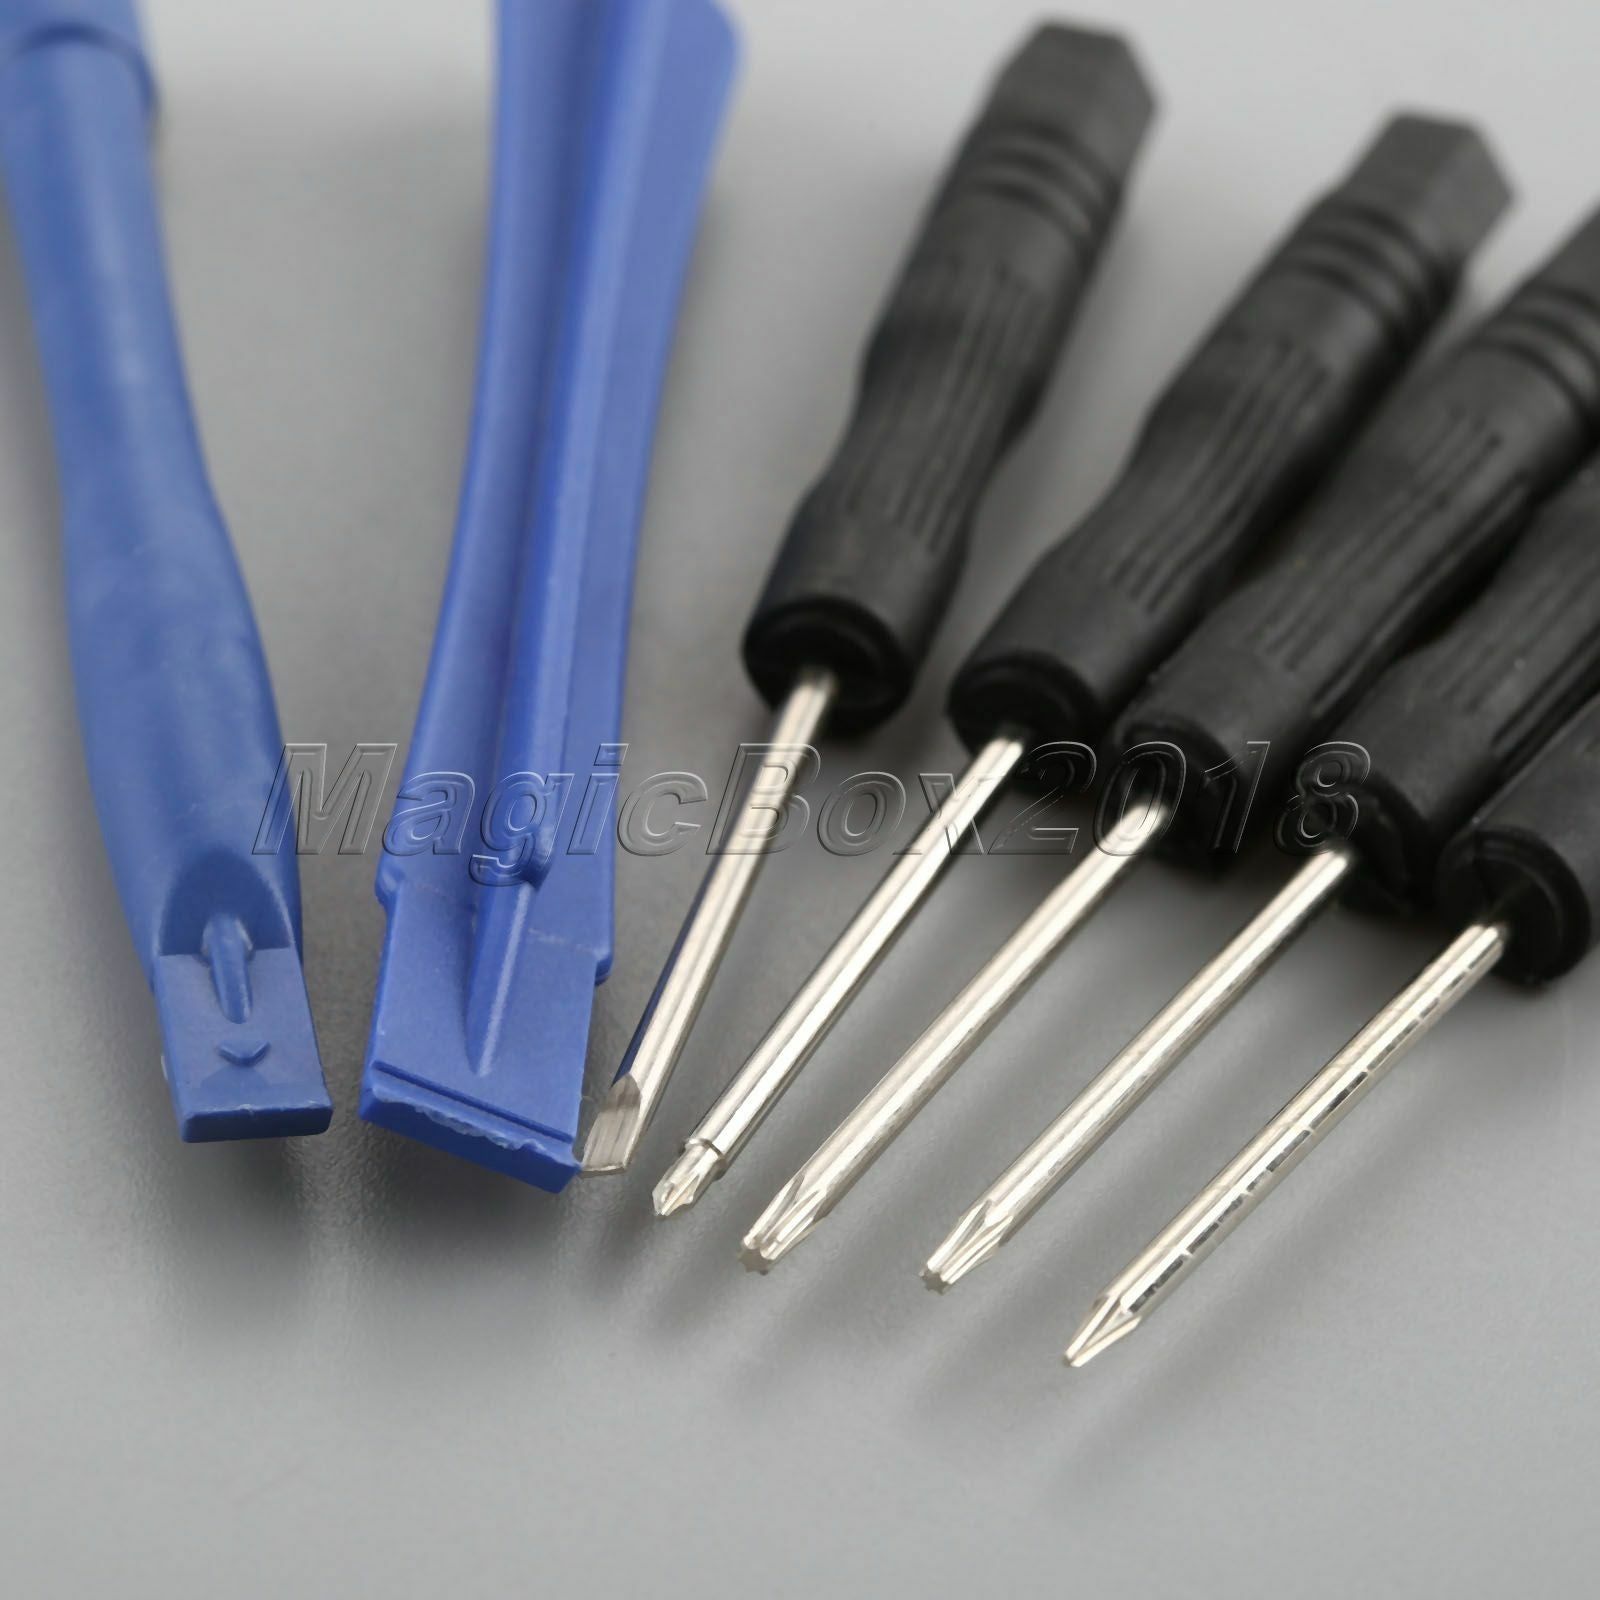 11 in 1 Repair Opening Tools Screwdriver Kit Set